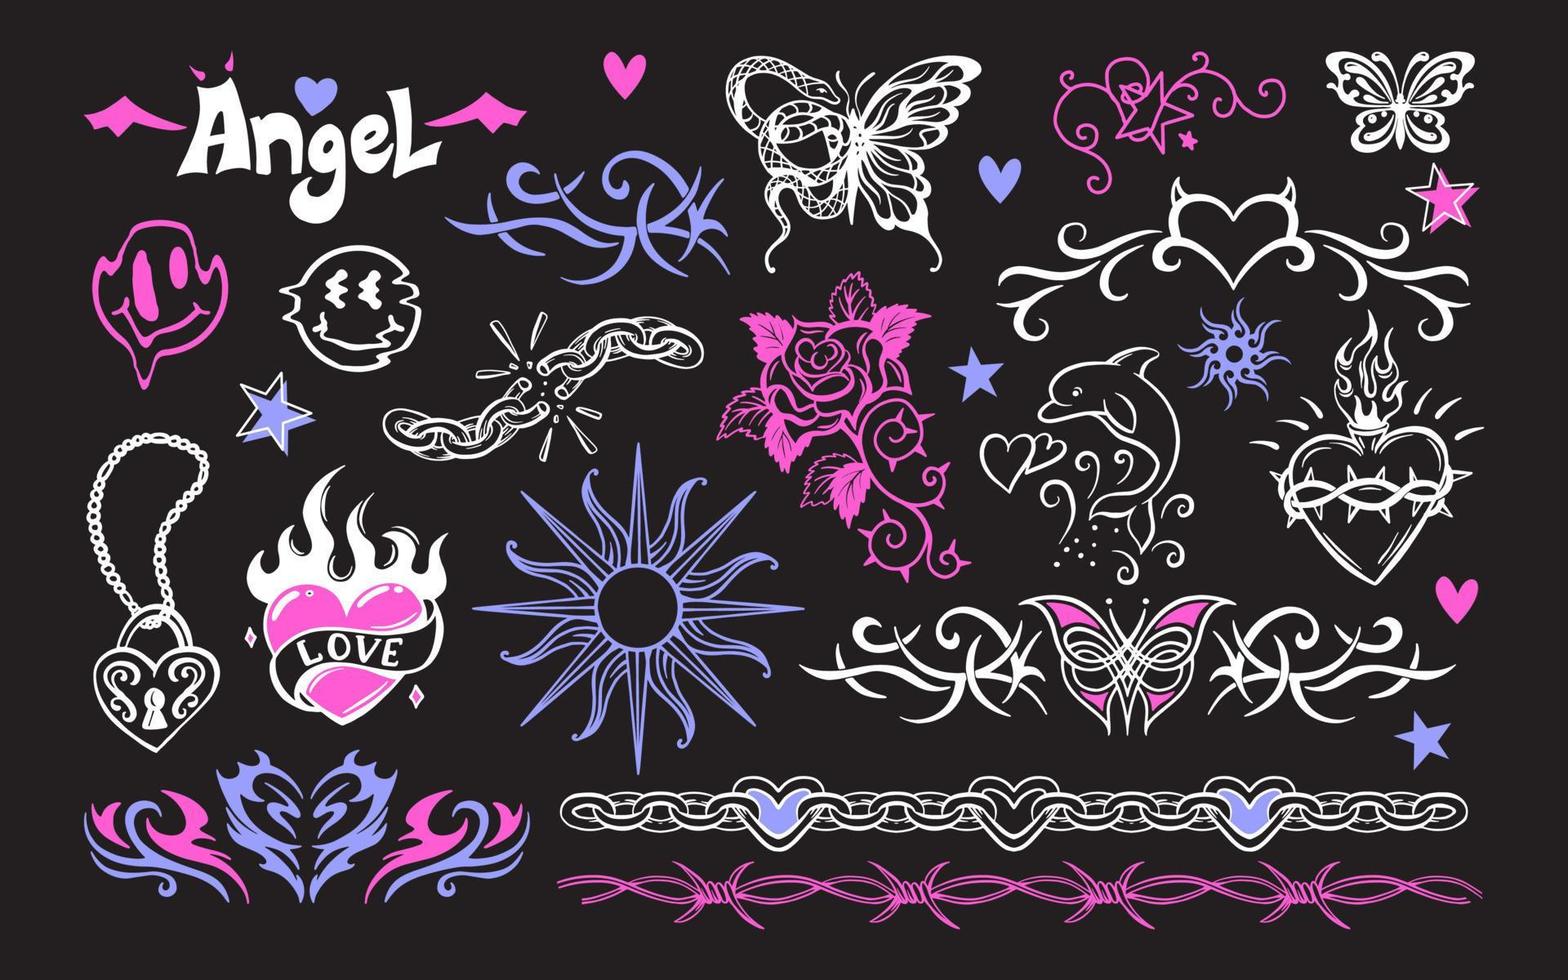 uma conjunto do temporário transferível retro tatuagens. menina emo estilo. coração, lâminas, rosas, corrente, borboleta, crânio vetor